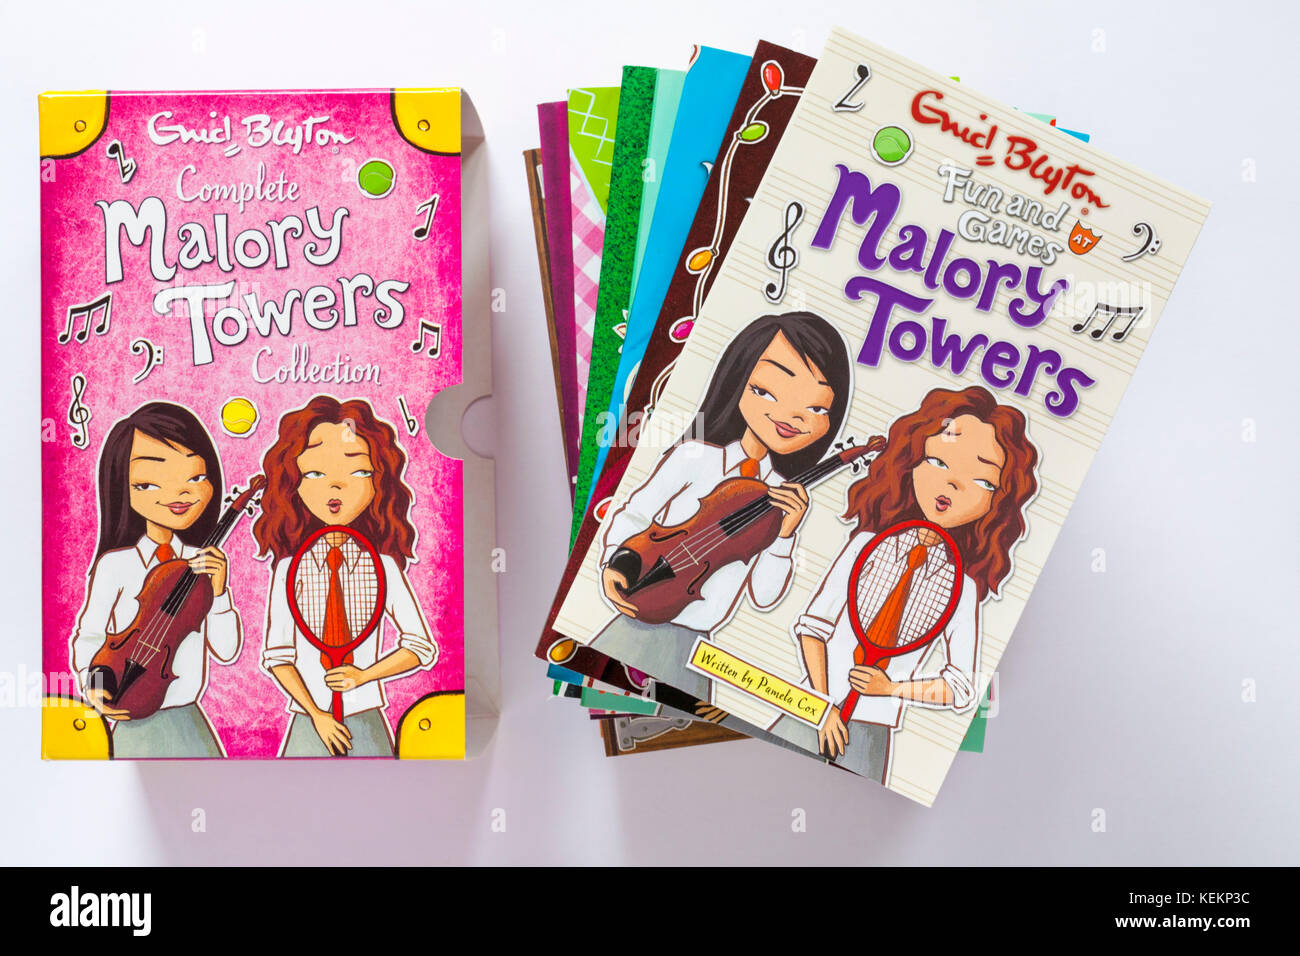 Komplette Malory Towers Sammlung Bücher von Enid Blyton - Bücher mit Spiel und Spaß bei Malory Towers buchen Sie oben auf weißem Hintergrund Blocklagerung Stockfoto